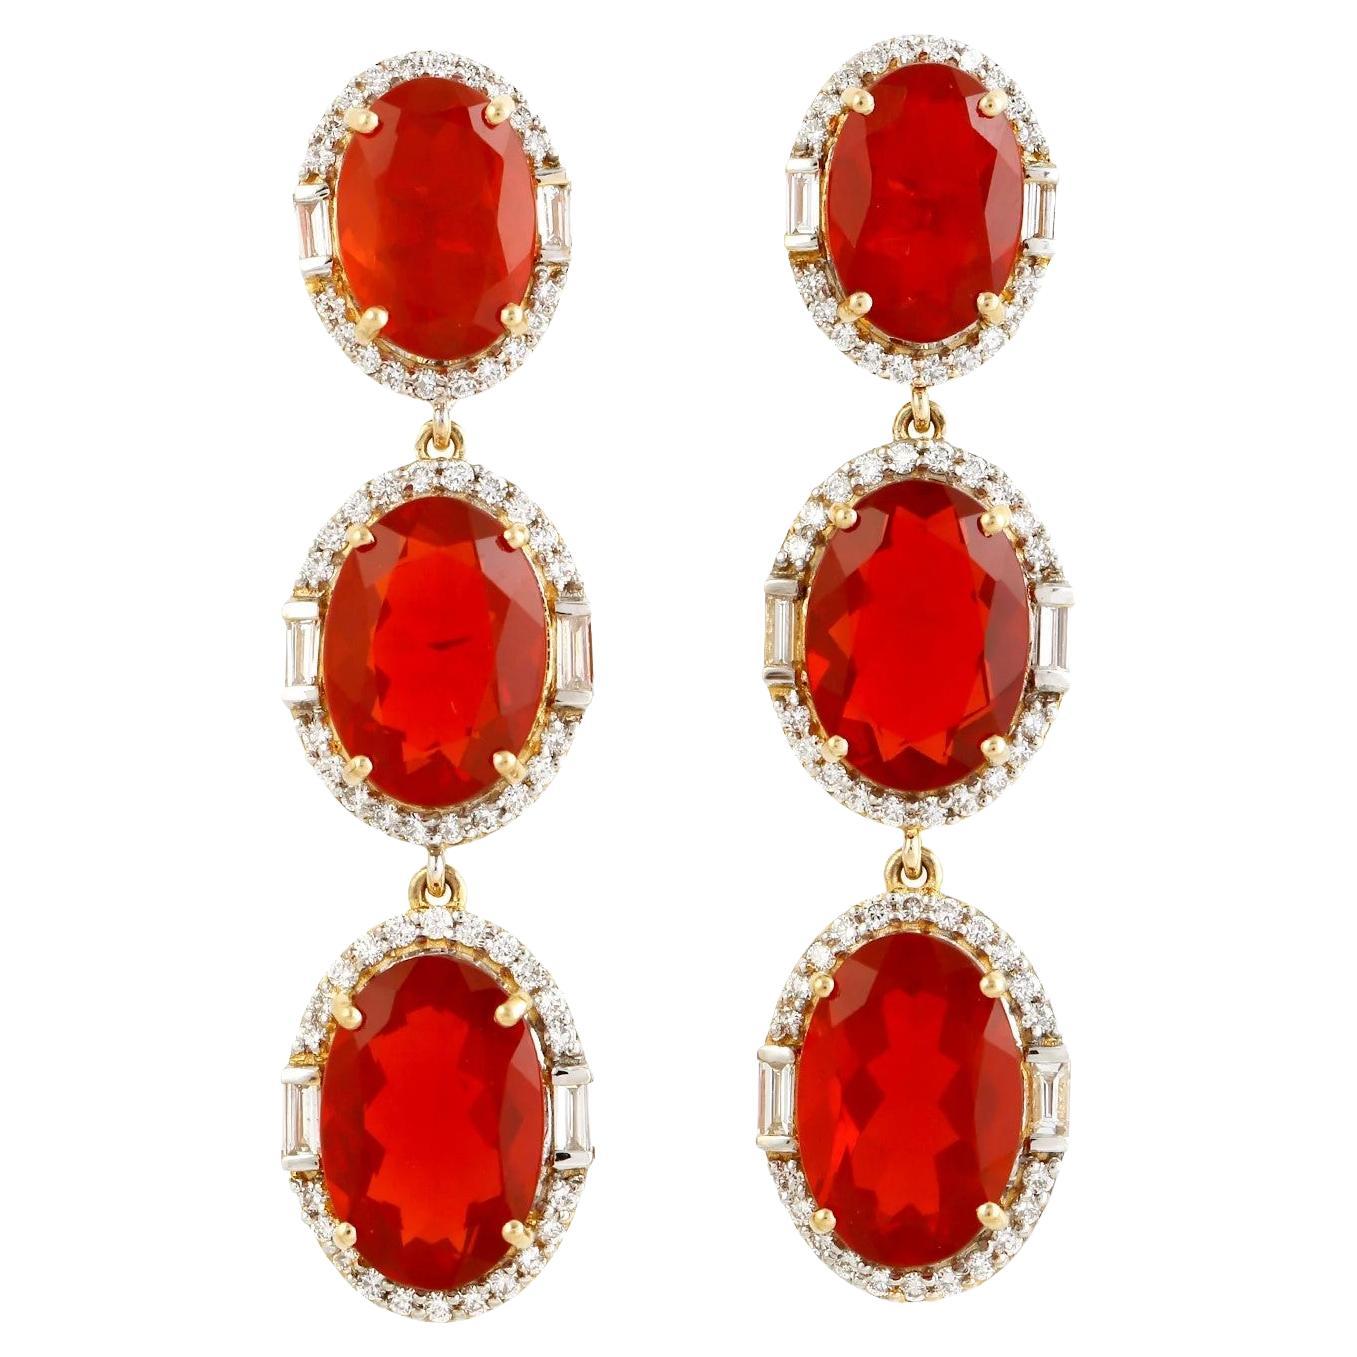  Meghna Jewels 13.27 Carats Fire Opal Diamond 18 Karat Gold Triple Drop Earrings For Sale